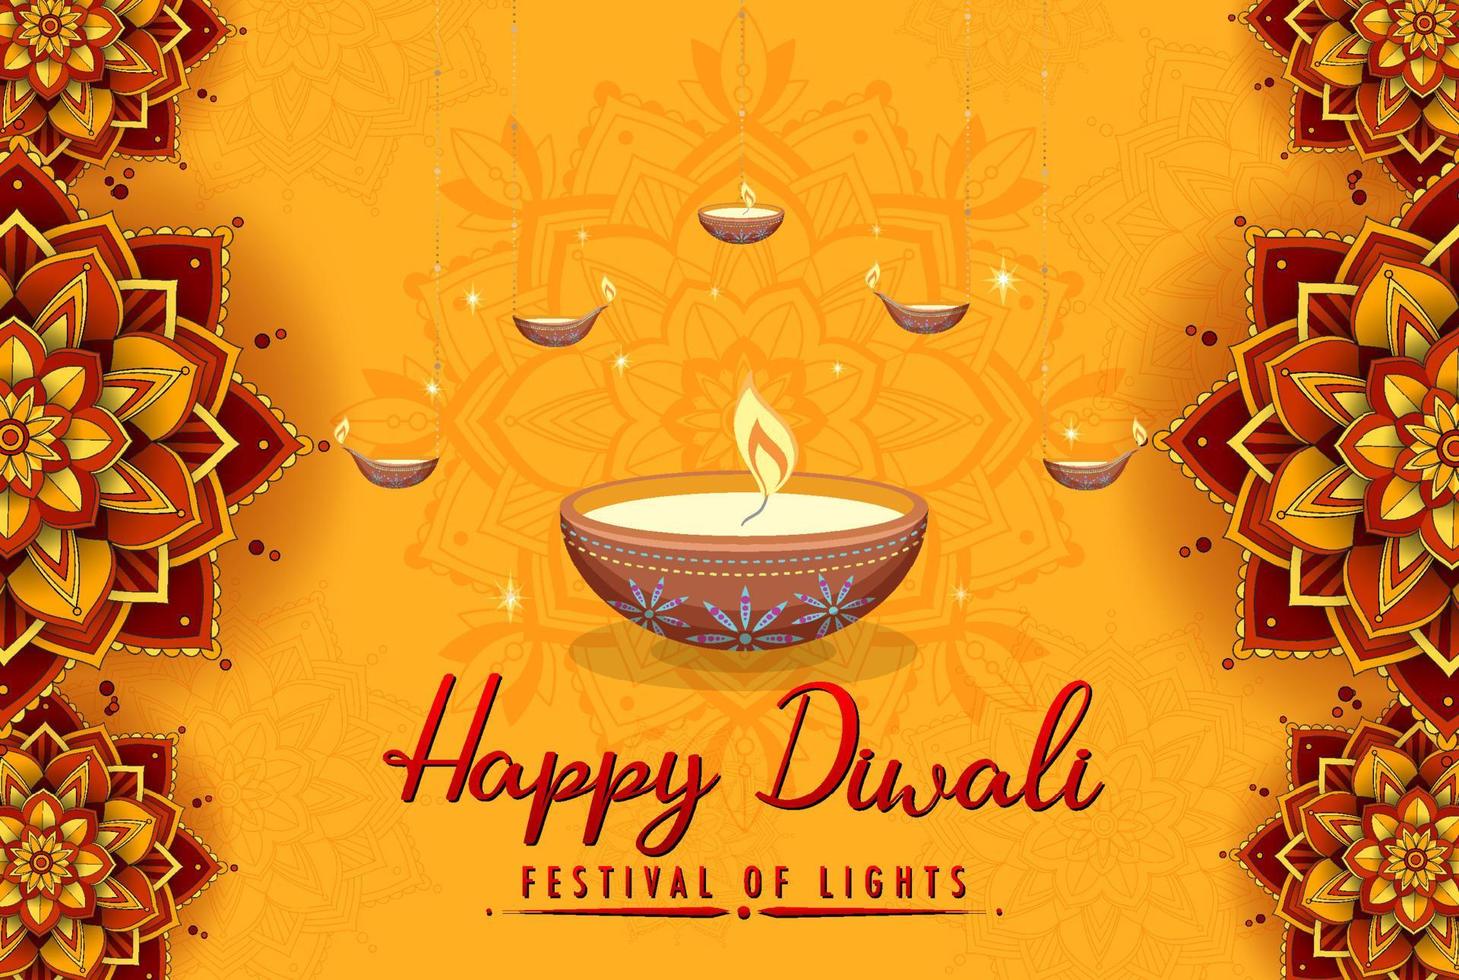 cartel del festival feliz de las luces de diwali vector